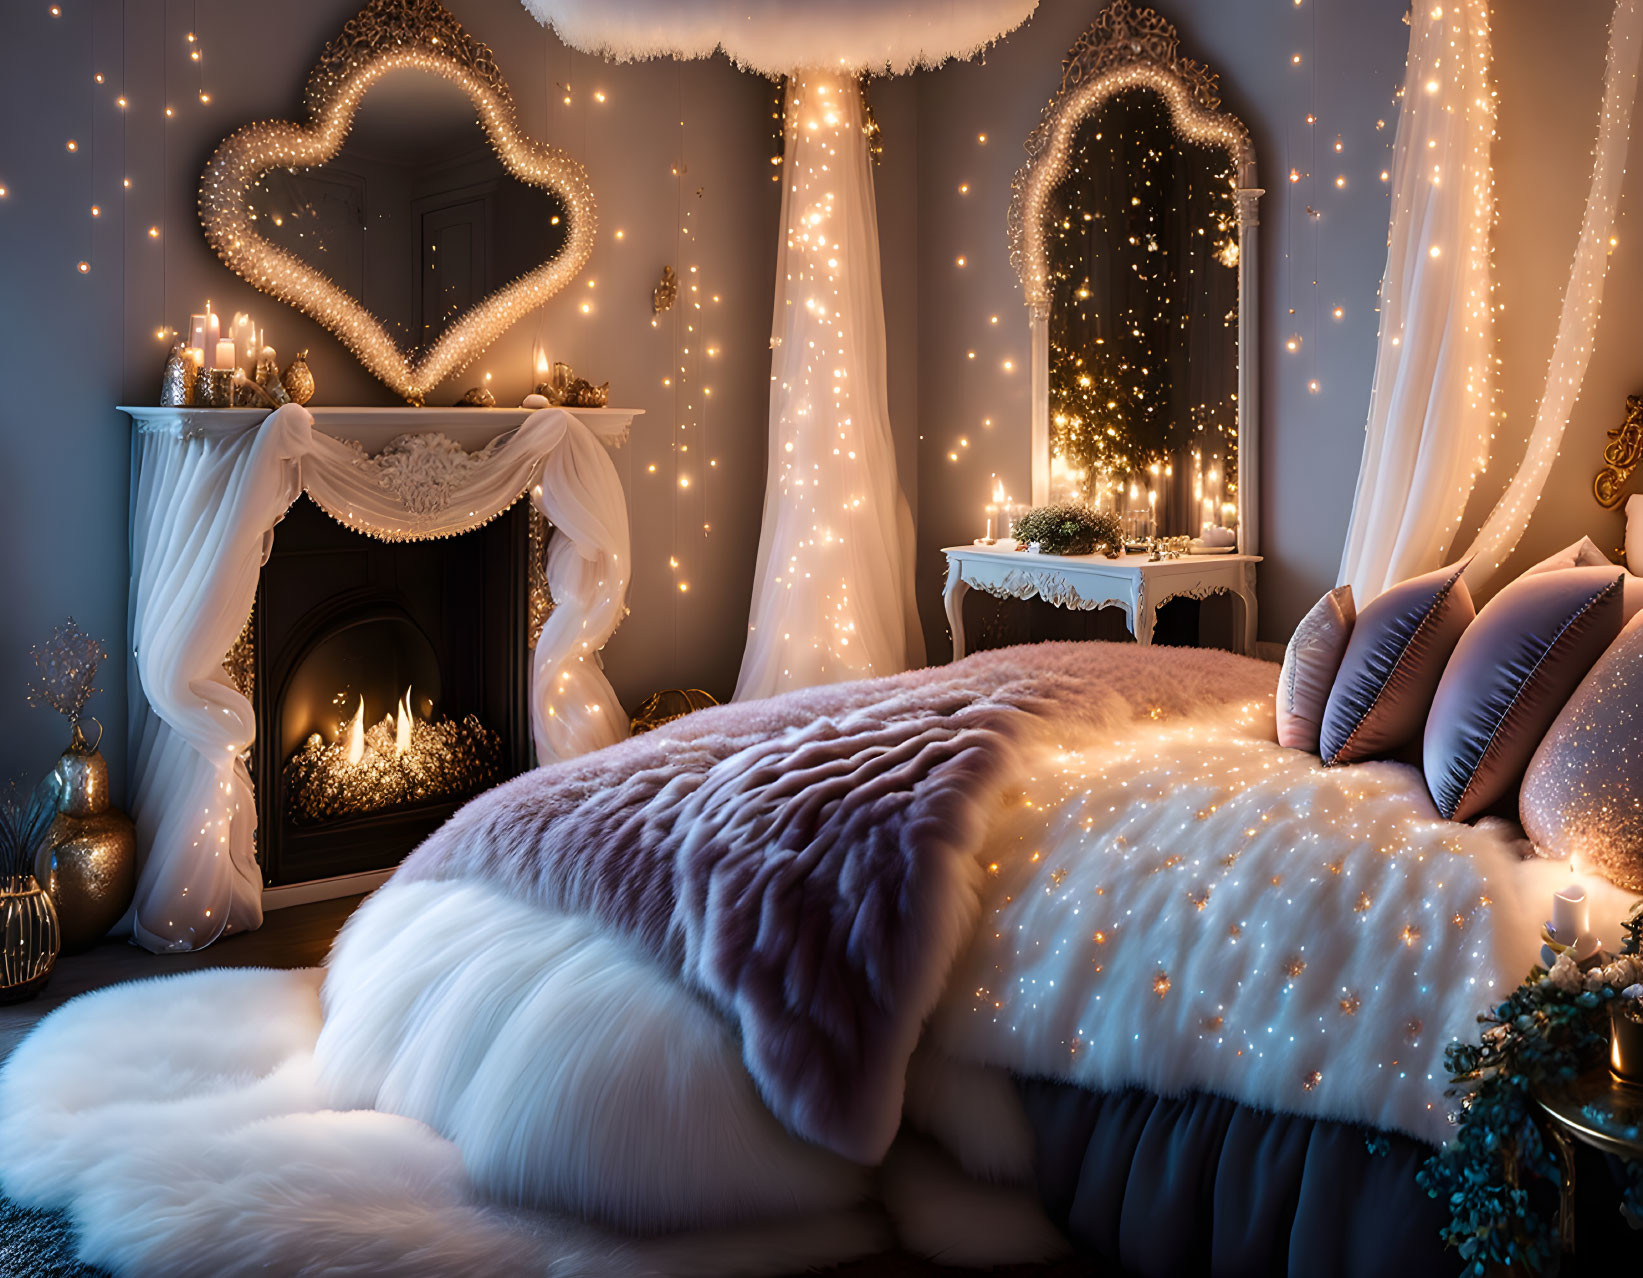 Festive lights, heart decor, faux fireplace in cozy bedroom